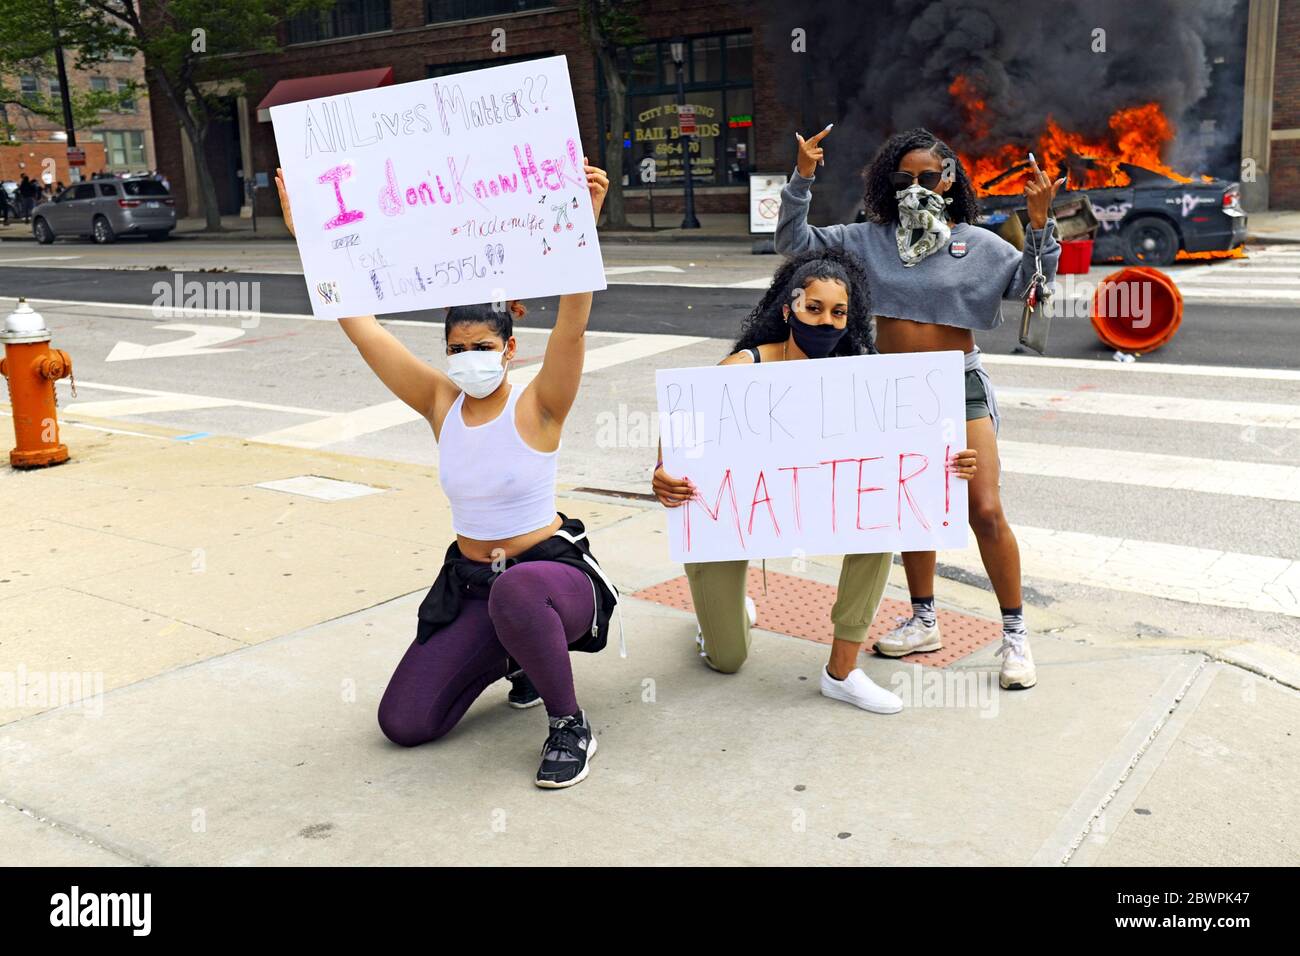 Trois femmes posent avec des panneaux devant deux voitures de police en feu dans le centre-ville de Cleveland, Ohio, États-Unis, lors d'une manifestation Black Lives Matter le 30 mai 2020. Les trois étaient parmi des milliers qui sont descendus dans les rues de Cleveland pour protester contre les politiques, les pratiques et le meurtre de Noirs. Banque D'Images